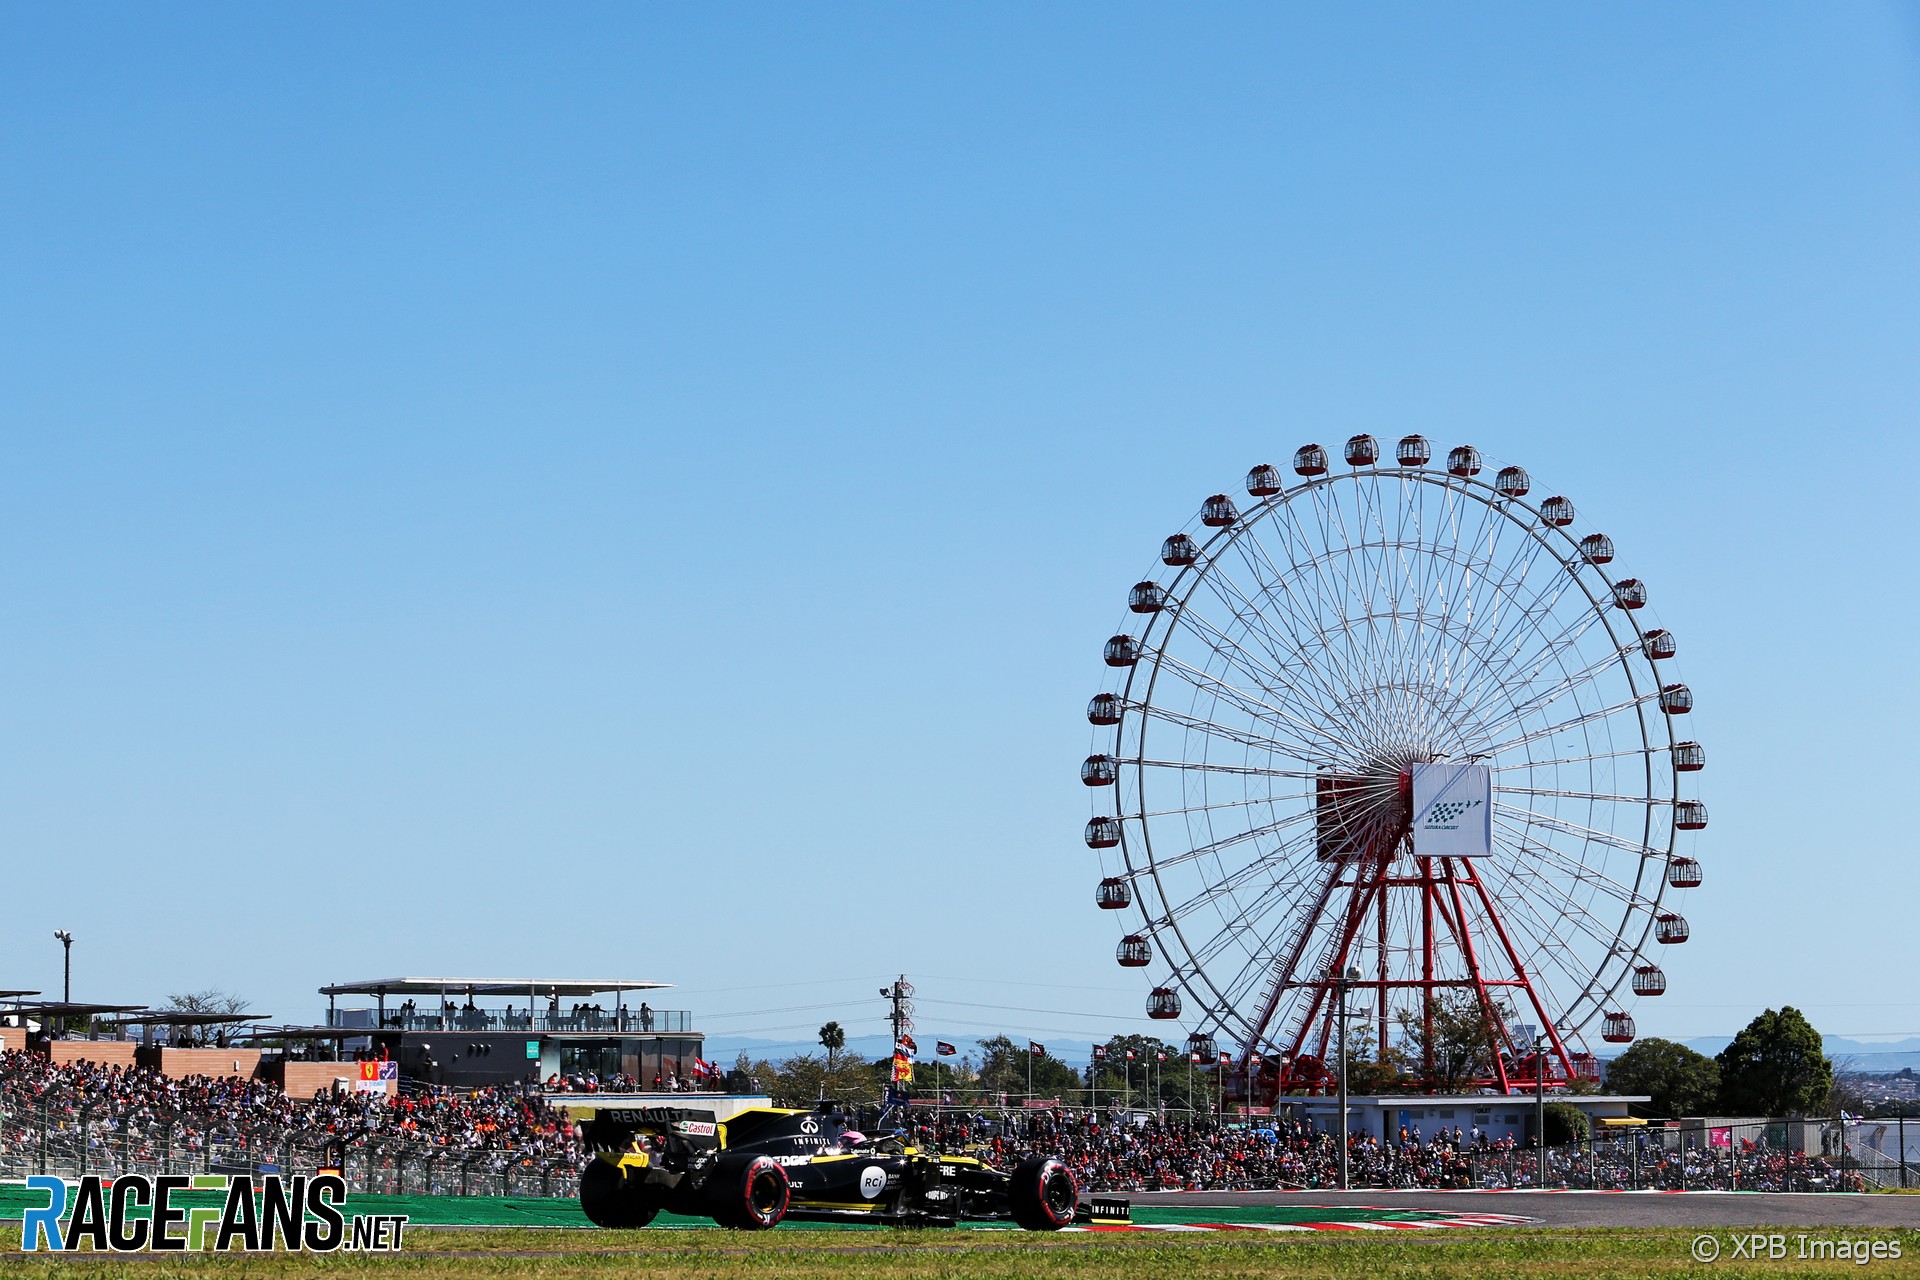 Daniel Ricciardo, Renault, Suzuka, 2019